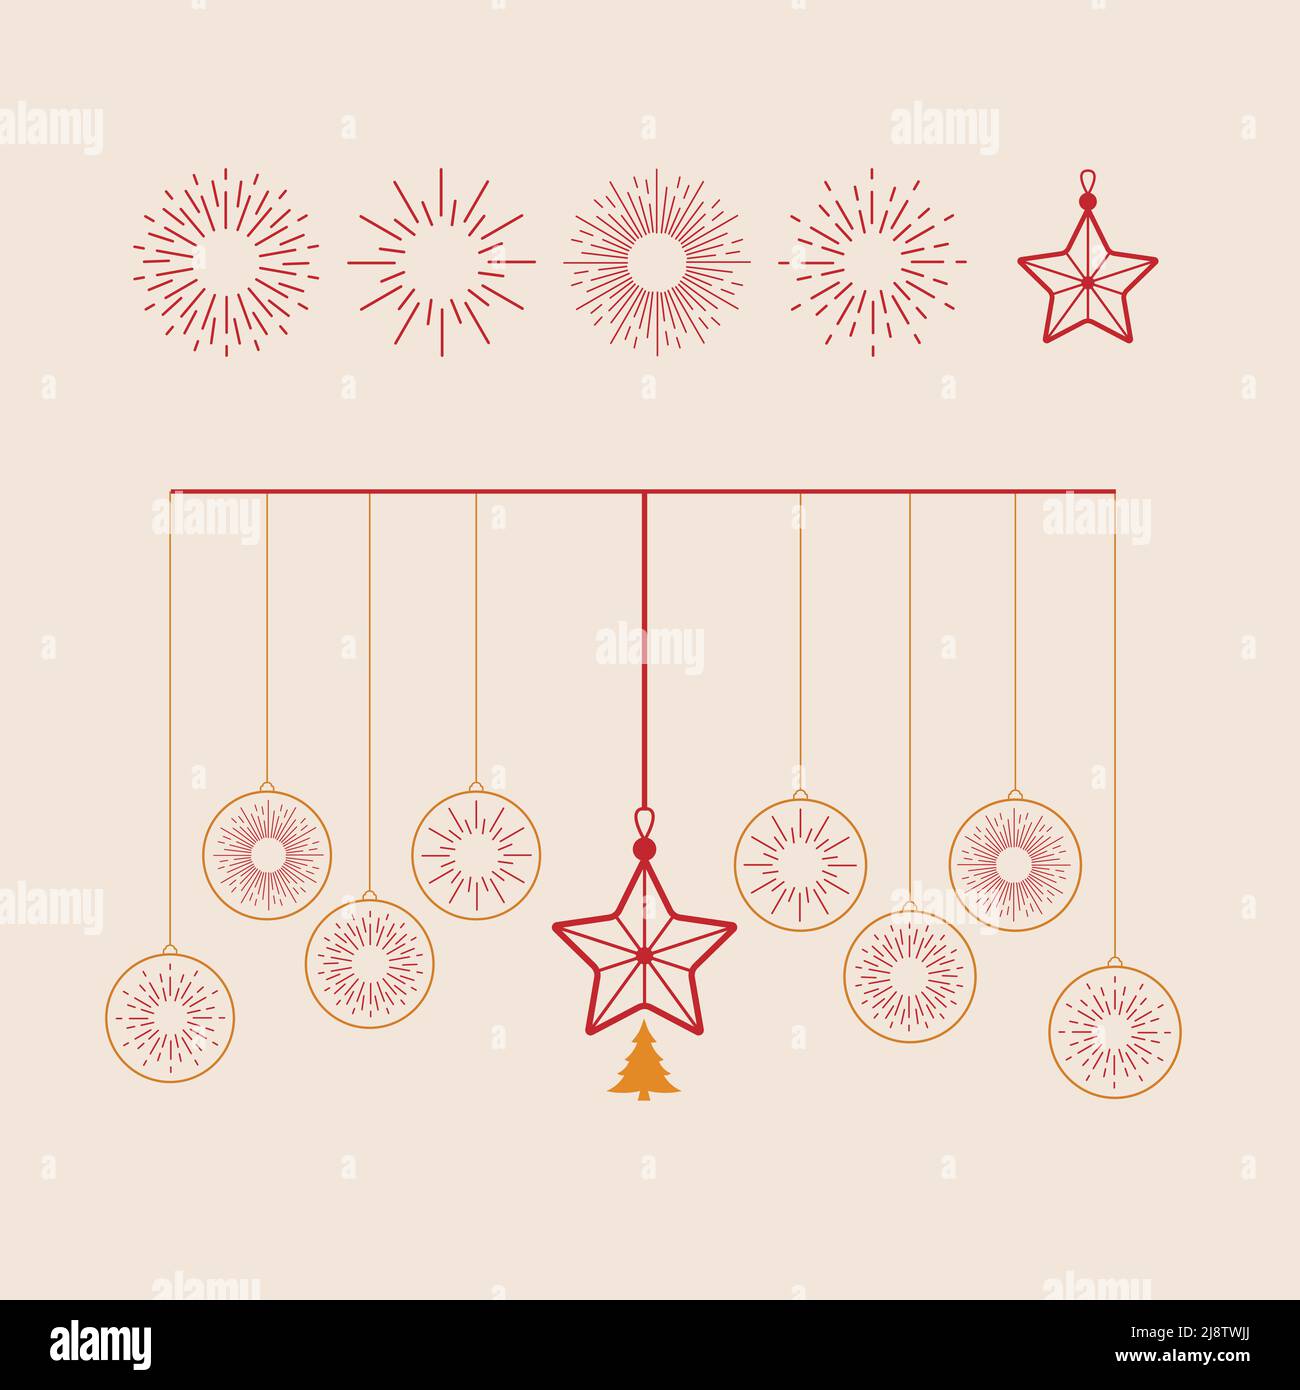 Hängende Weihnachtssterne und funkelnde isoliert in hellrosa Hintergrund. Element für Weihnachten und glückliches neues Jahr Vektor-Design. Stock Vektor